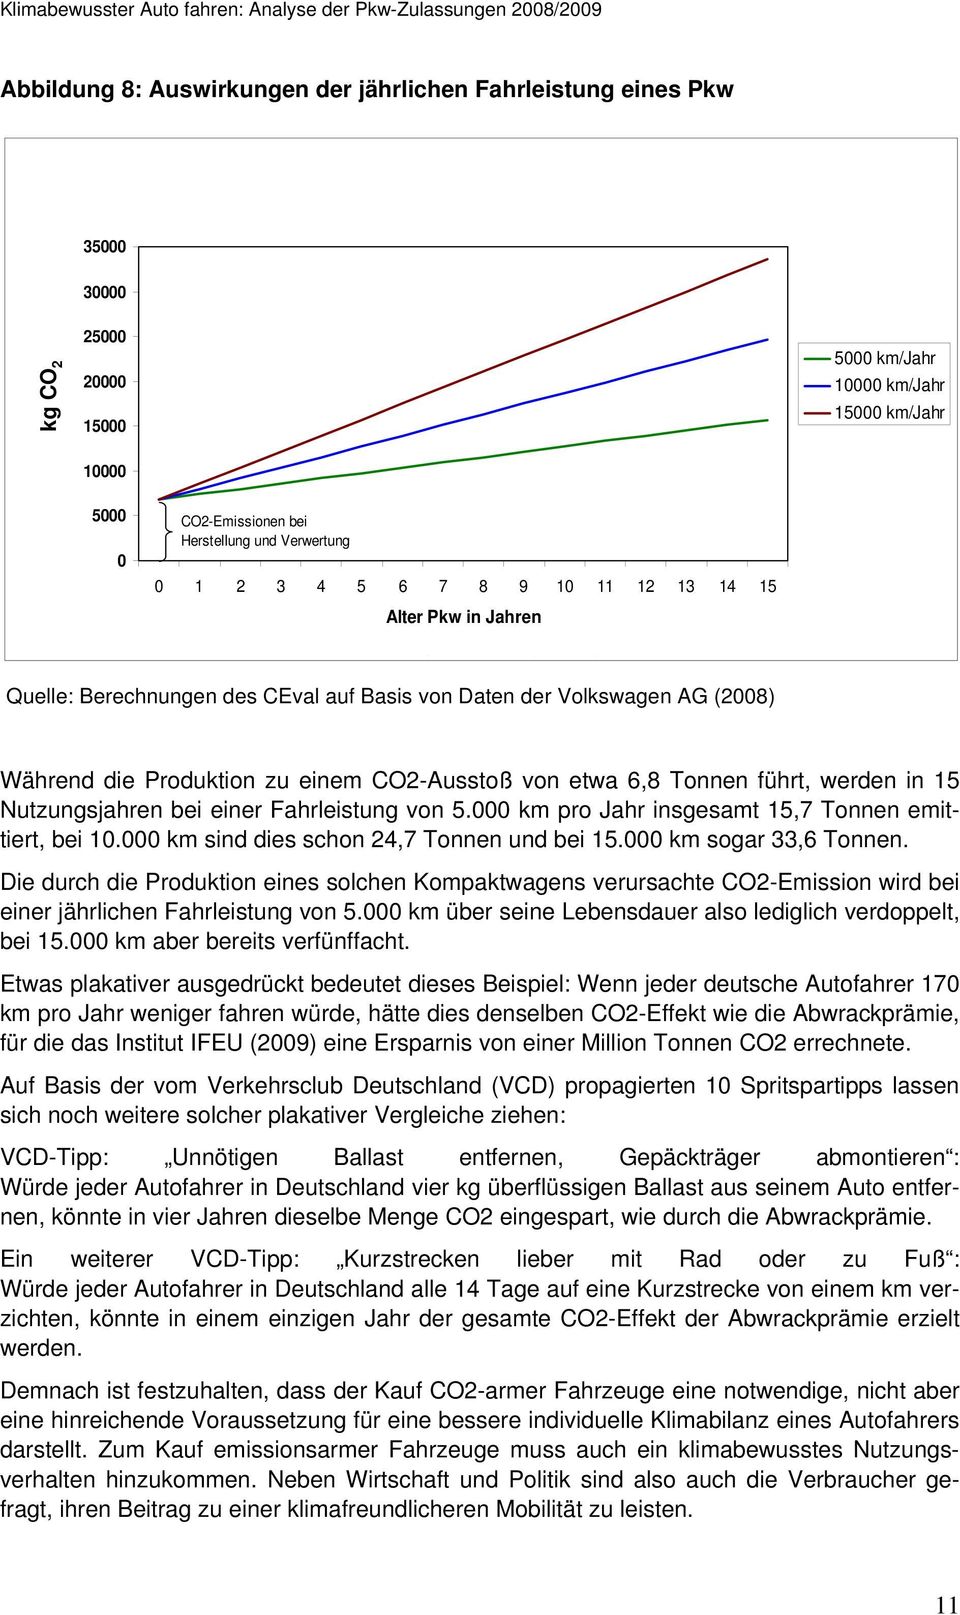 VI (VW 2008) Quelle: Berechnungen des CEval auf Basis von Daten der Volkswagen AG (2008) Während die Produktion zu einem CO2-Ausstoß von etwa 6,8 Tonnen führt, werden in 15 Nutzungsjahren bei einer